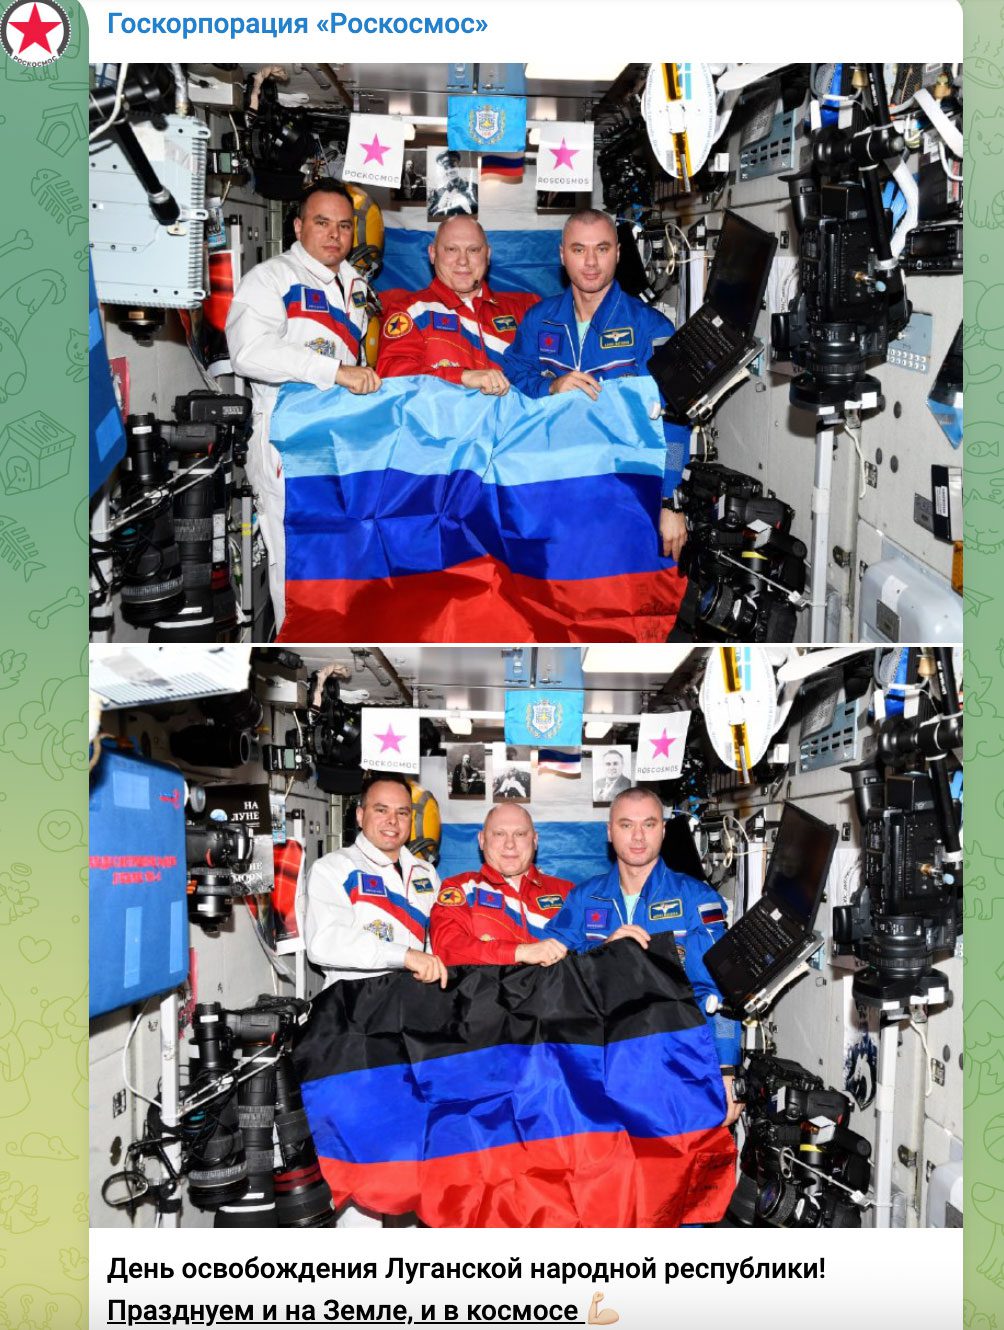 Російські астронавти демонструють прапори «ДНР» та «ЛНР» на міжнародній космічній станції. Скриншот з телеграм-каналу «Роскосмос»